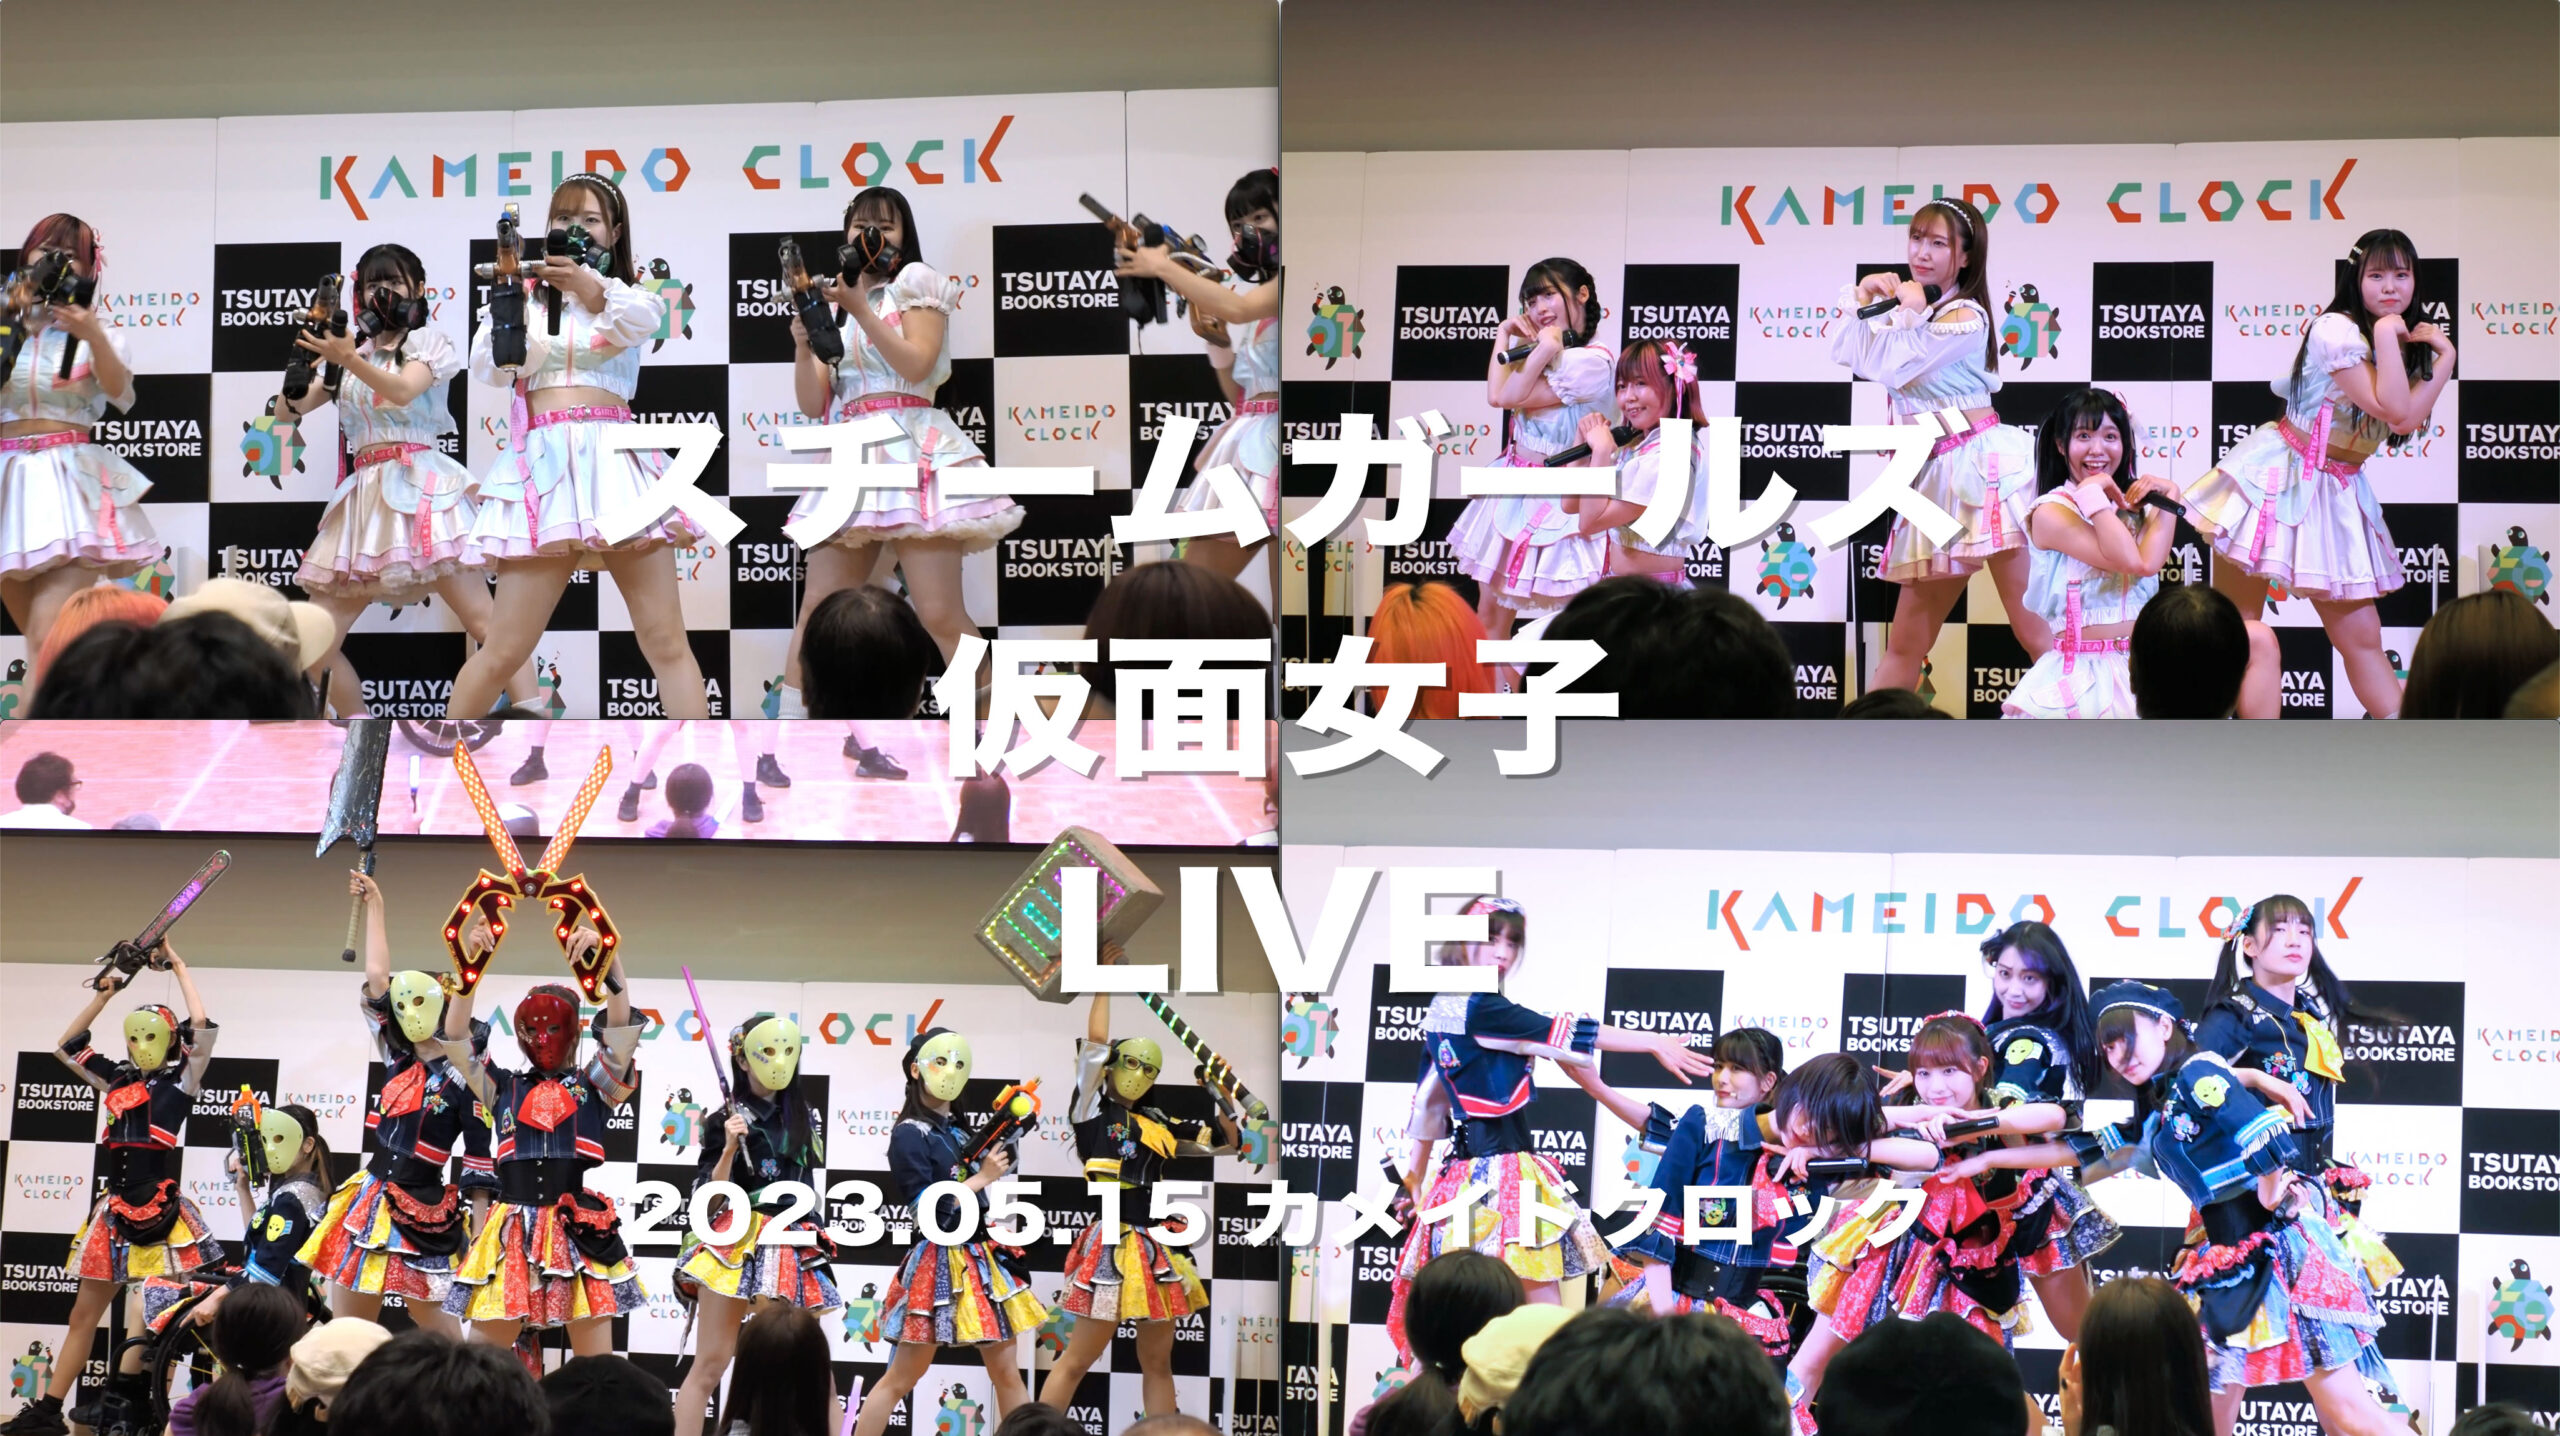 スチームガールズ & 仮面女子 LIVE ＠ カメイドクロック #カメクロ #カメクロライブ #仮面女子 #スチームガールズ